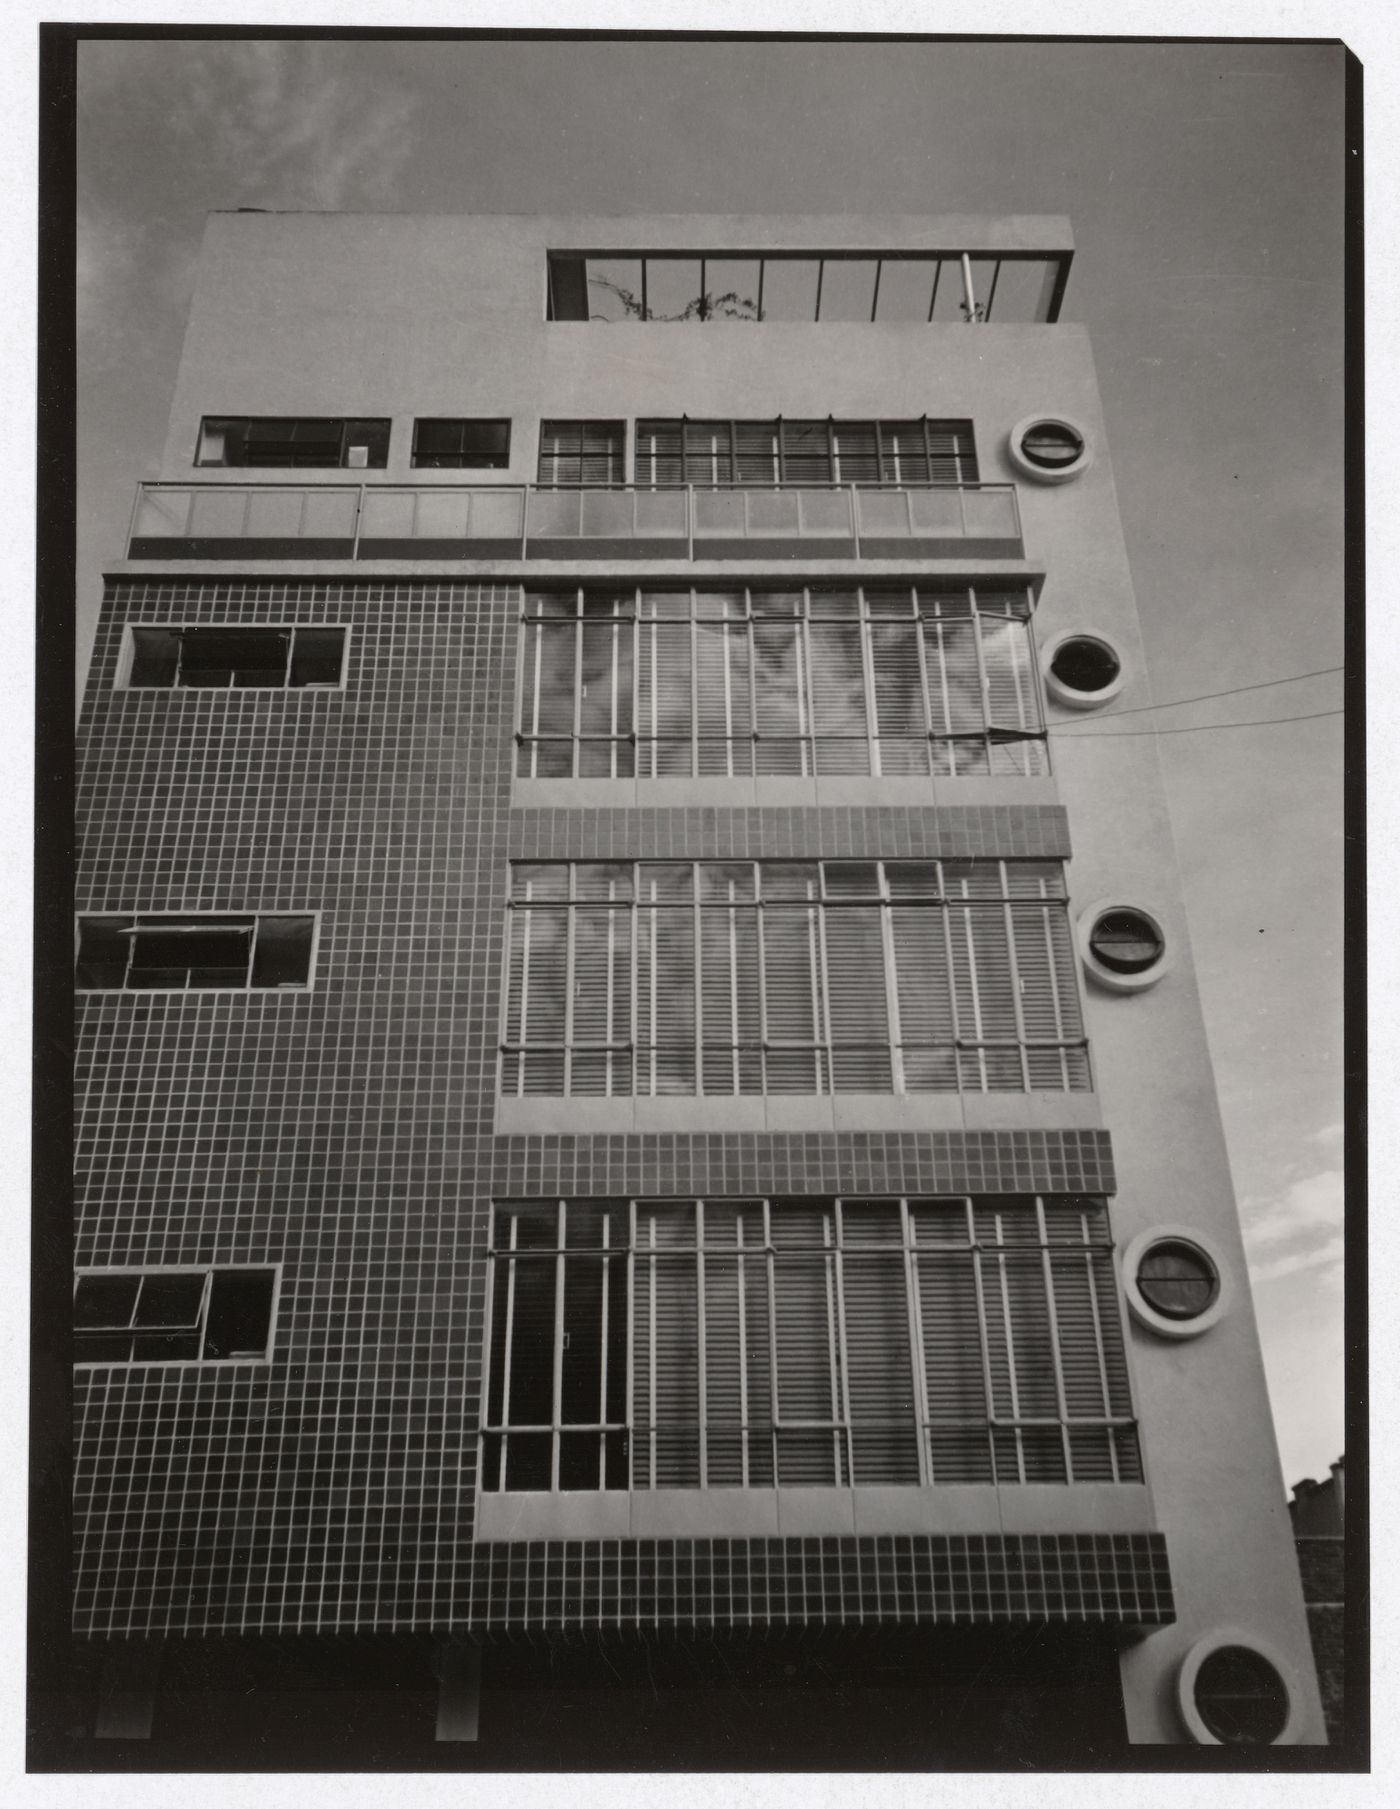 Apartment House Calle Estasburgo 60 by Enrique de la Mora and José Creixell, Estrasburgo St. 20, Mexico City, Mexico